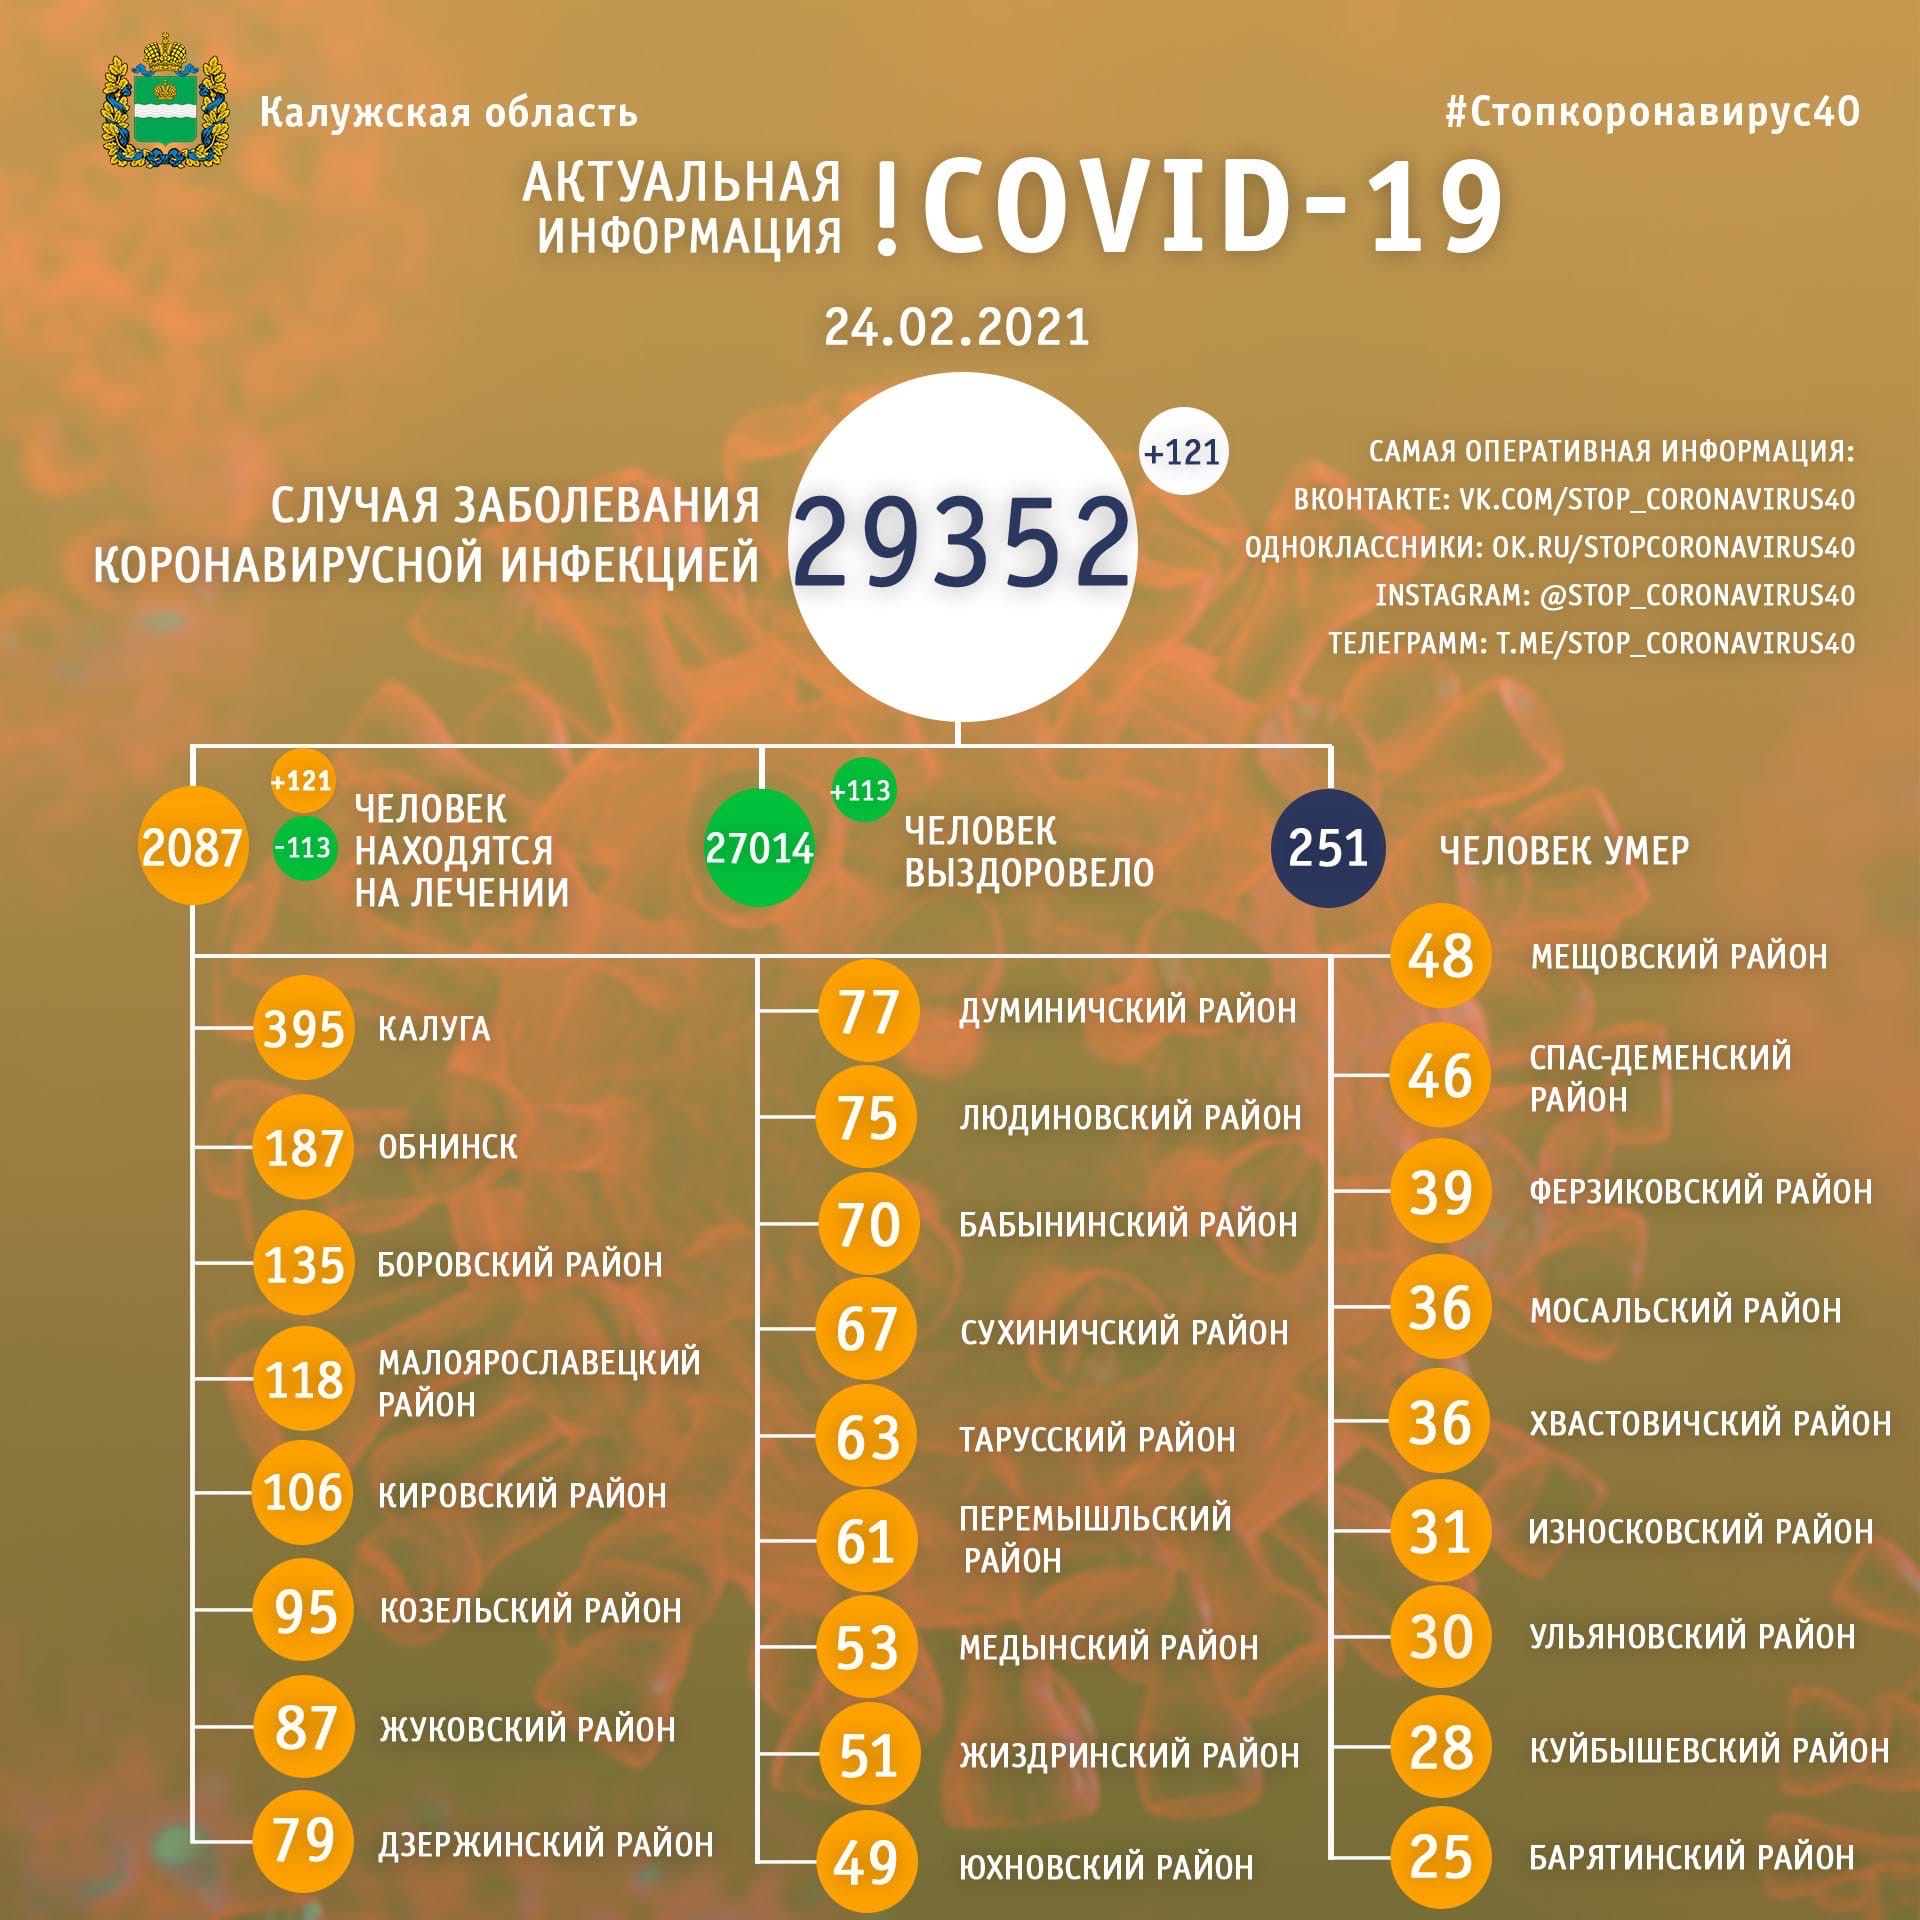 Официальная статистика по коронавирусу в Калужской области 24 февраля 2021 года.